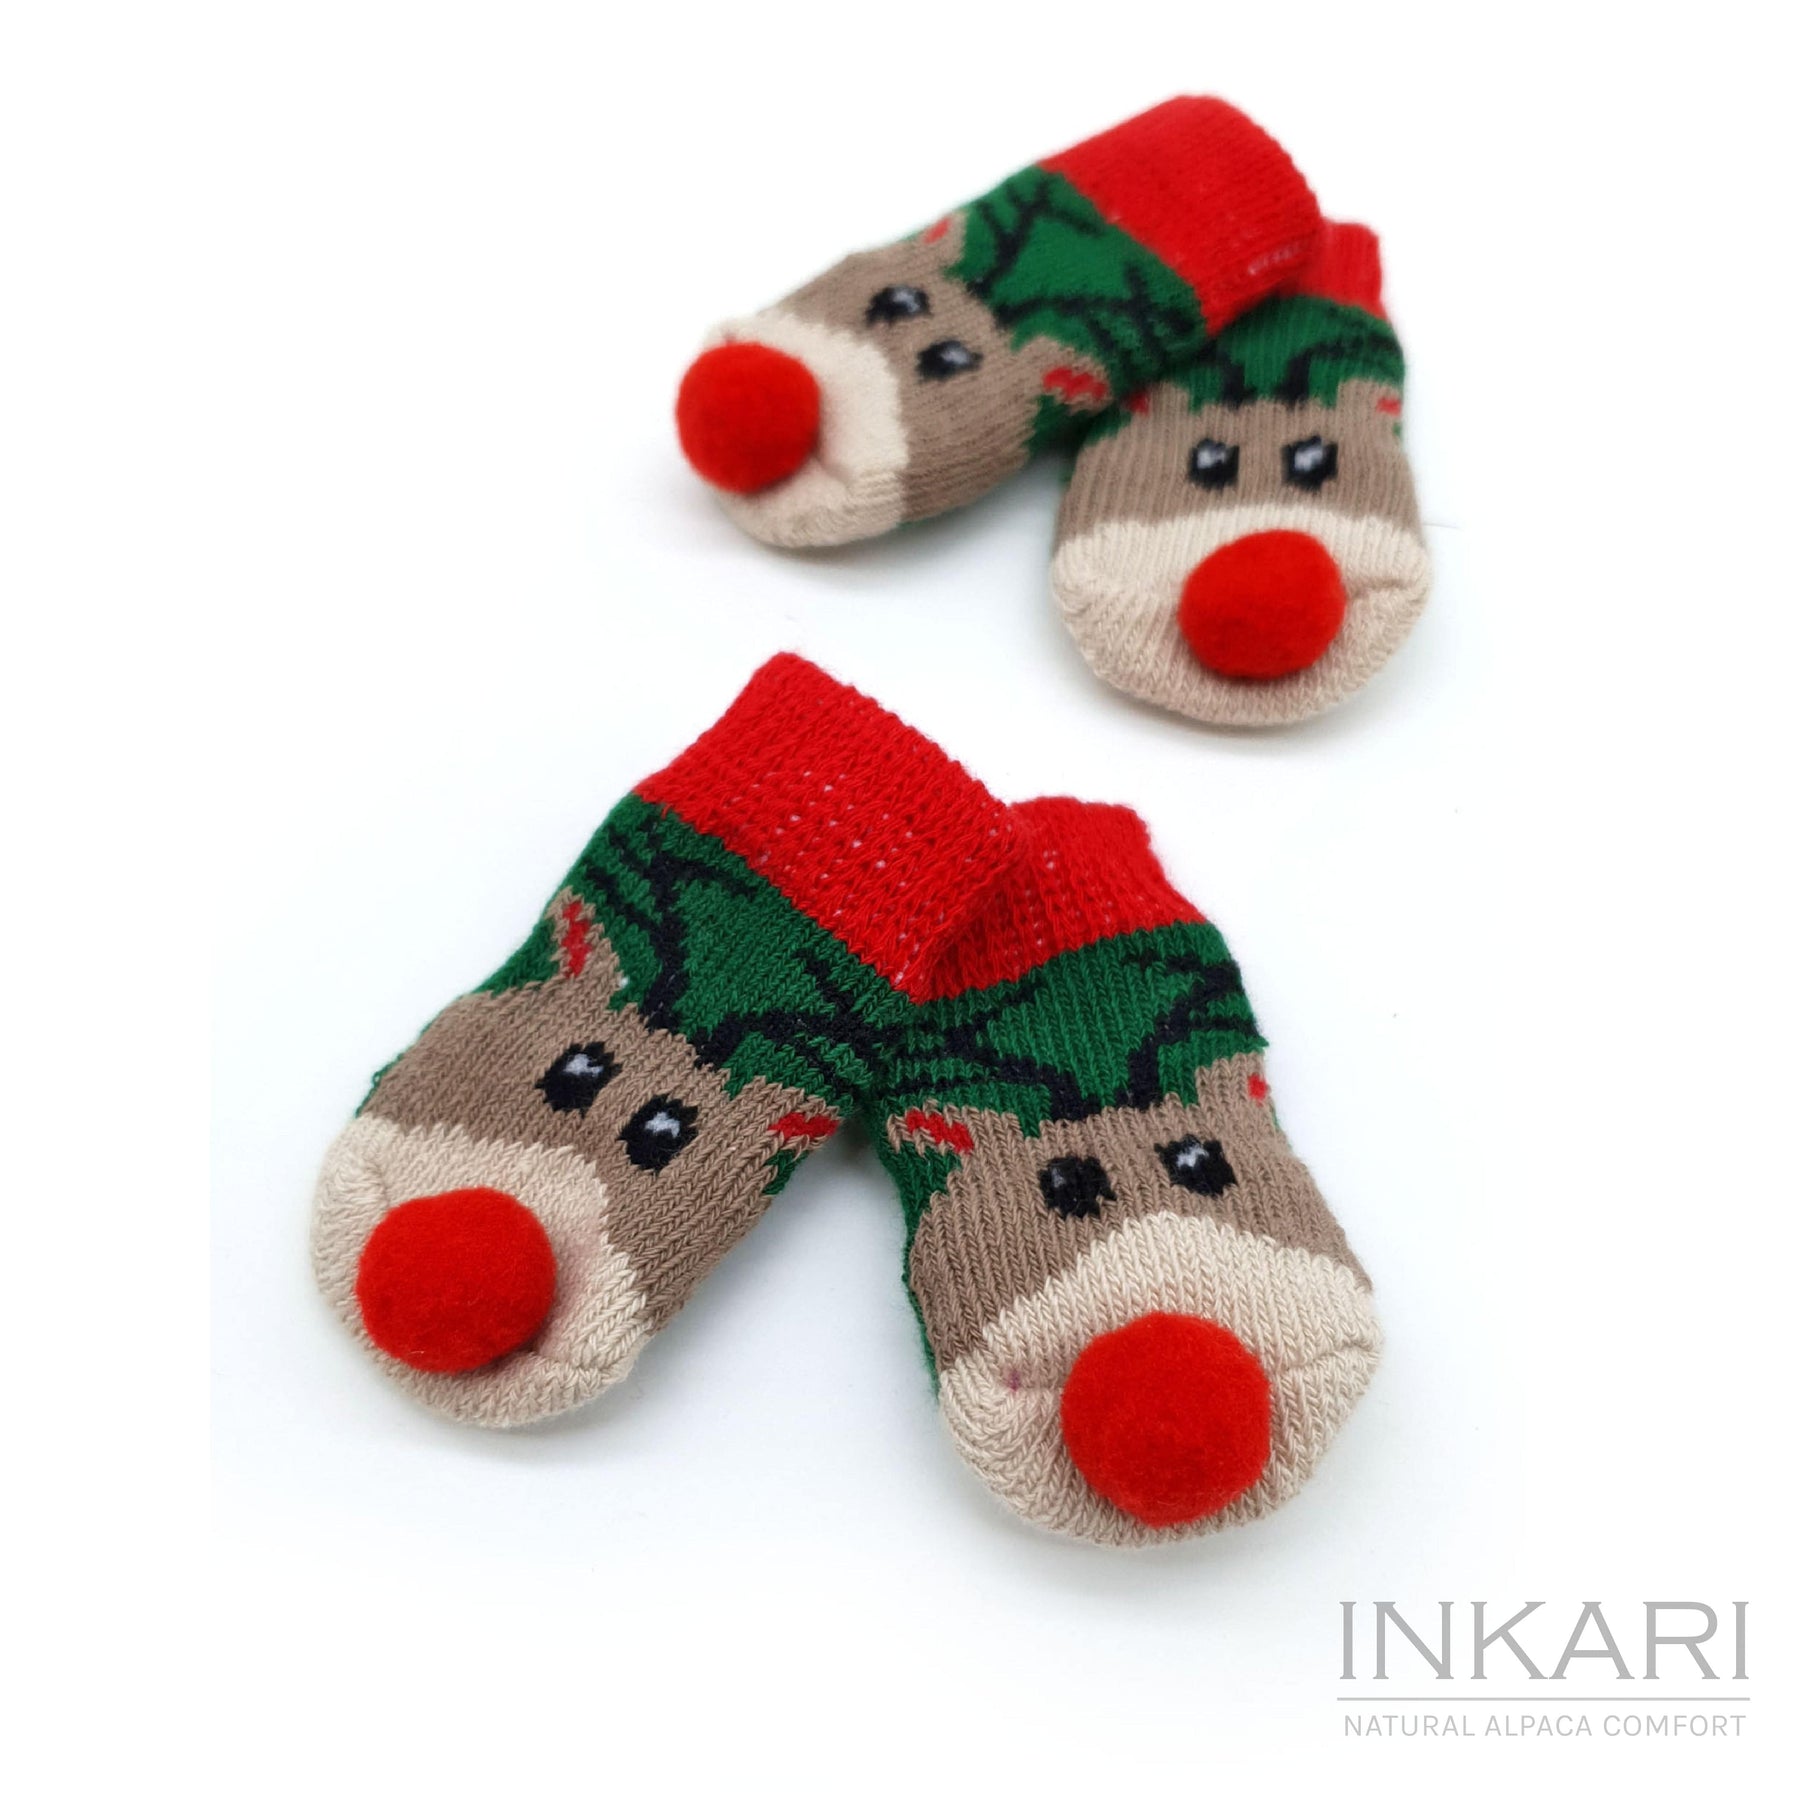 Alpaka-Socken